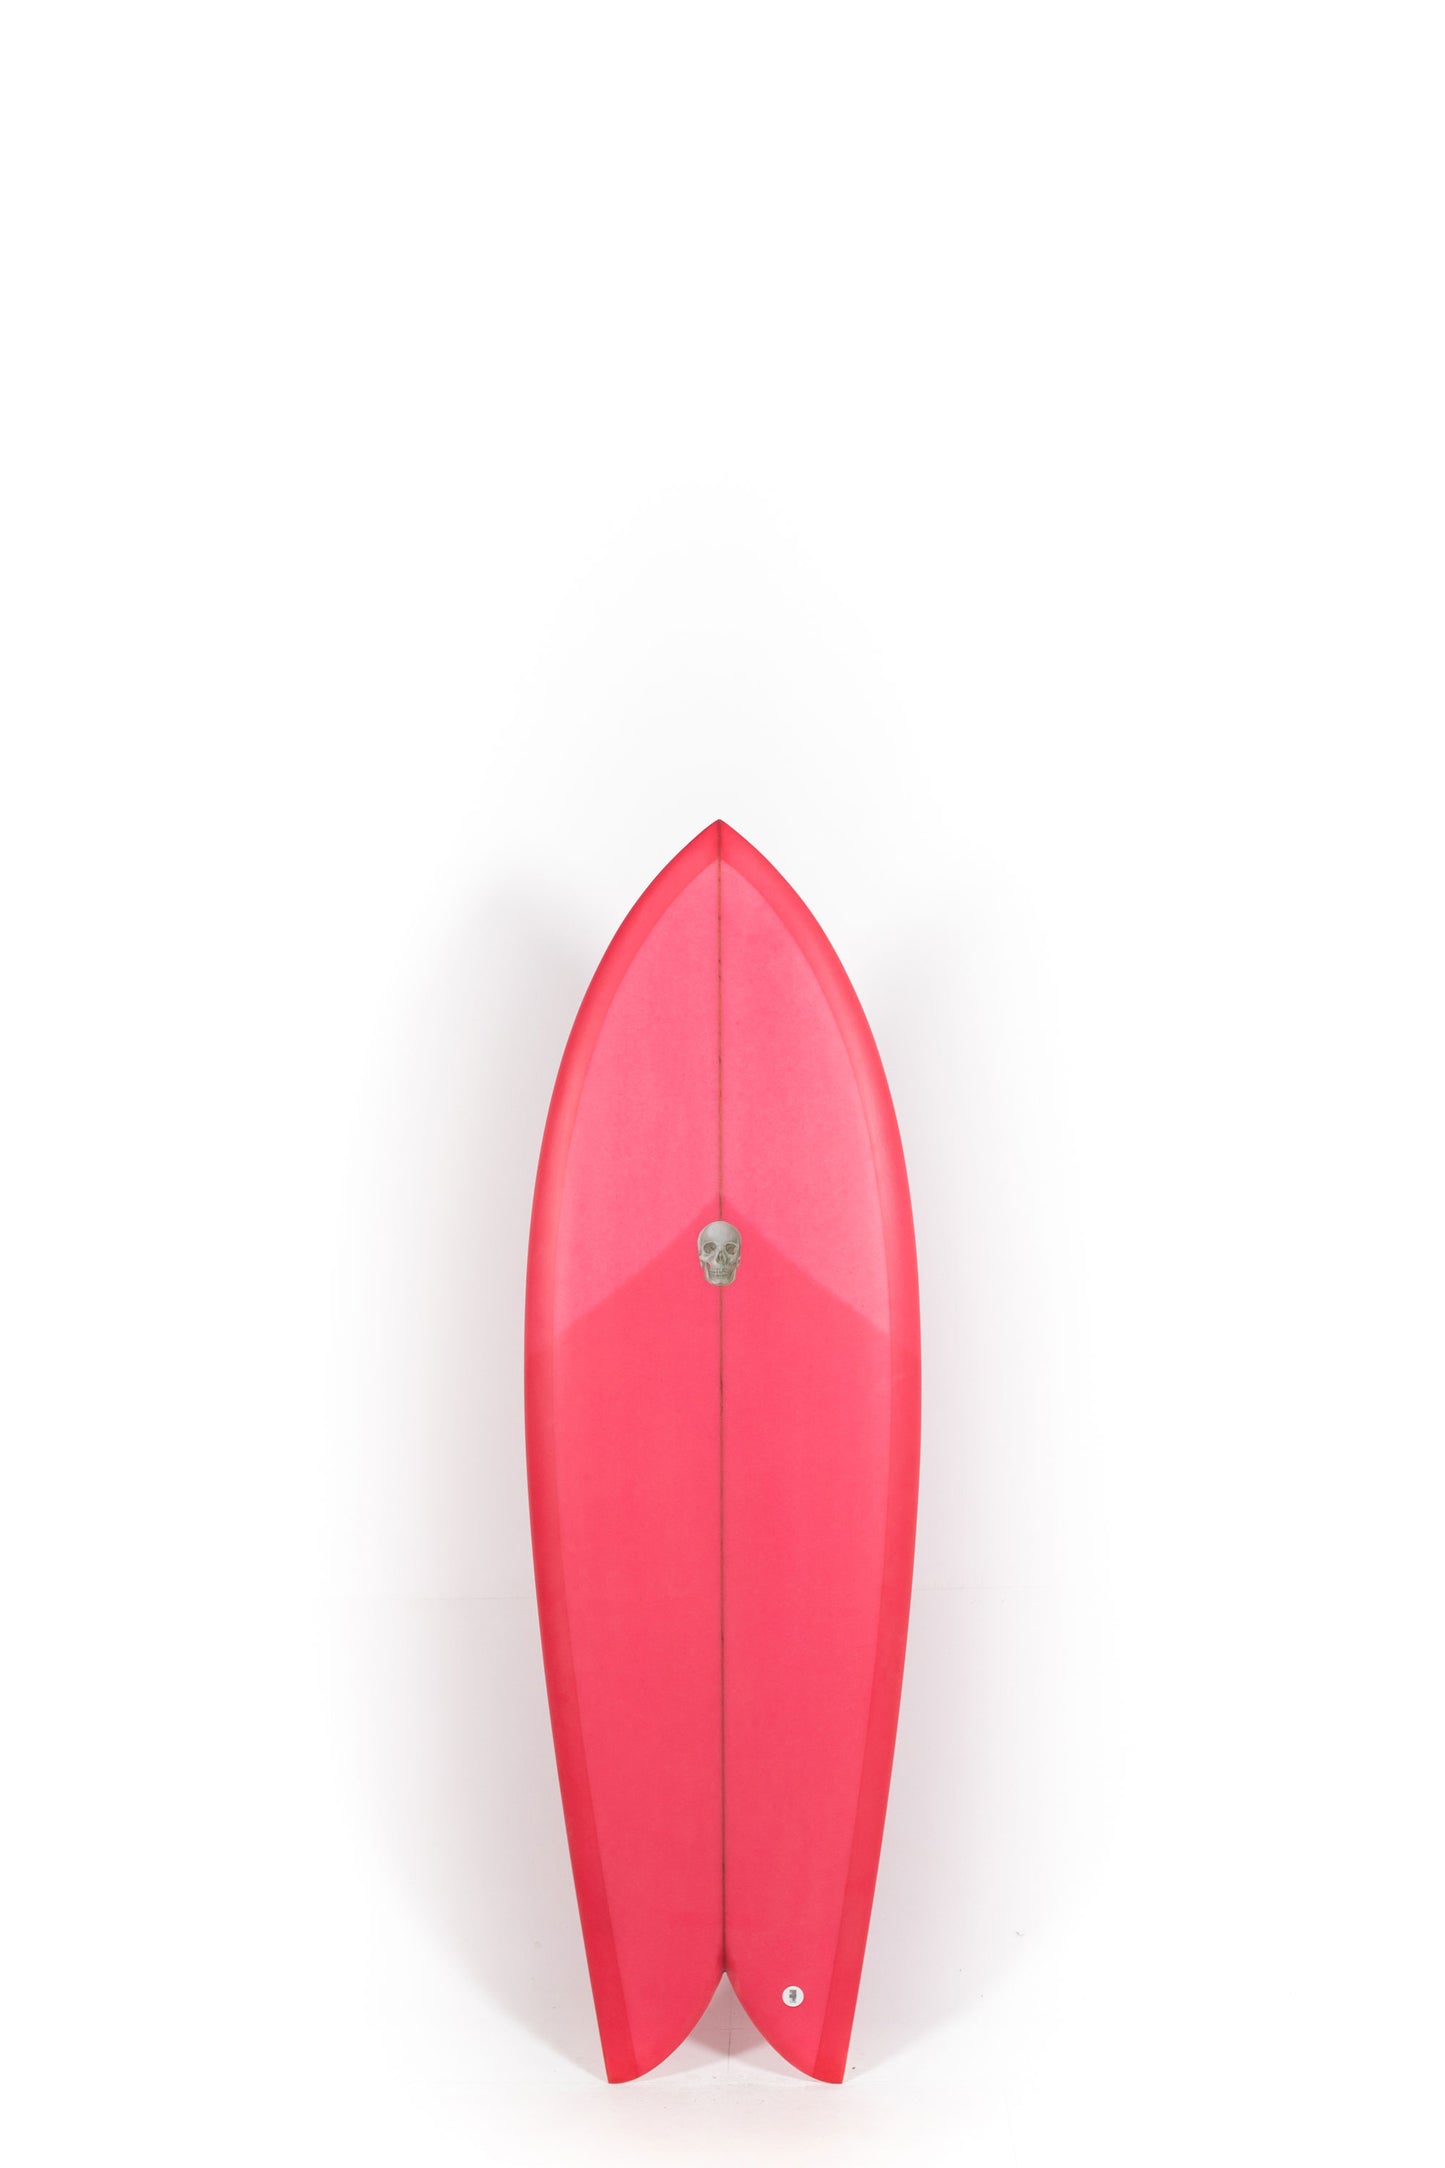 Pukas Surf Shop - Christenson Surfboards - CHRIS FISH - 5'6" x 20 7/8 x 2 7/16 - CX05007